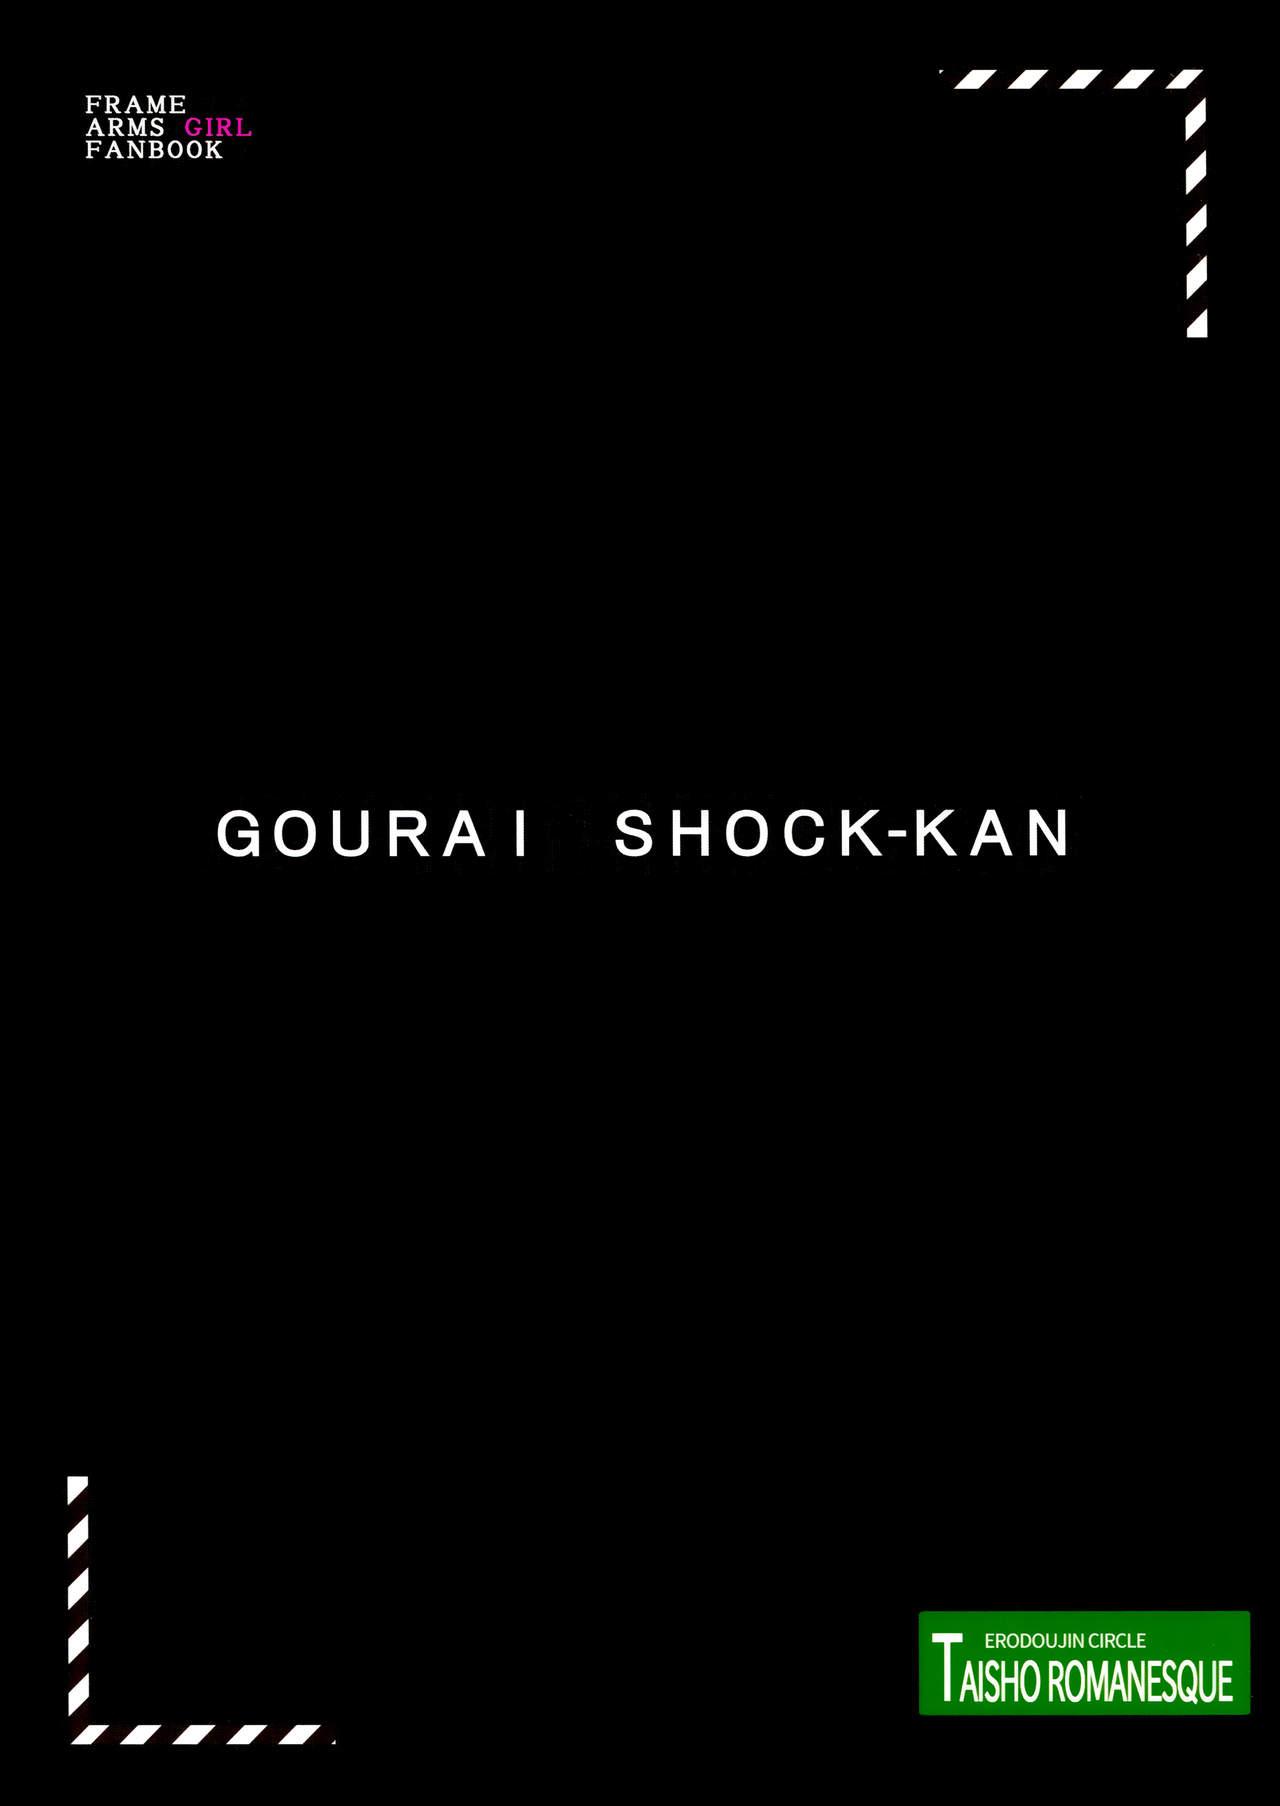 White Chick Gourai Shokukan - Frame arms girl Tongue - Page 2